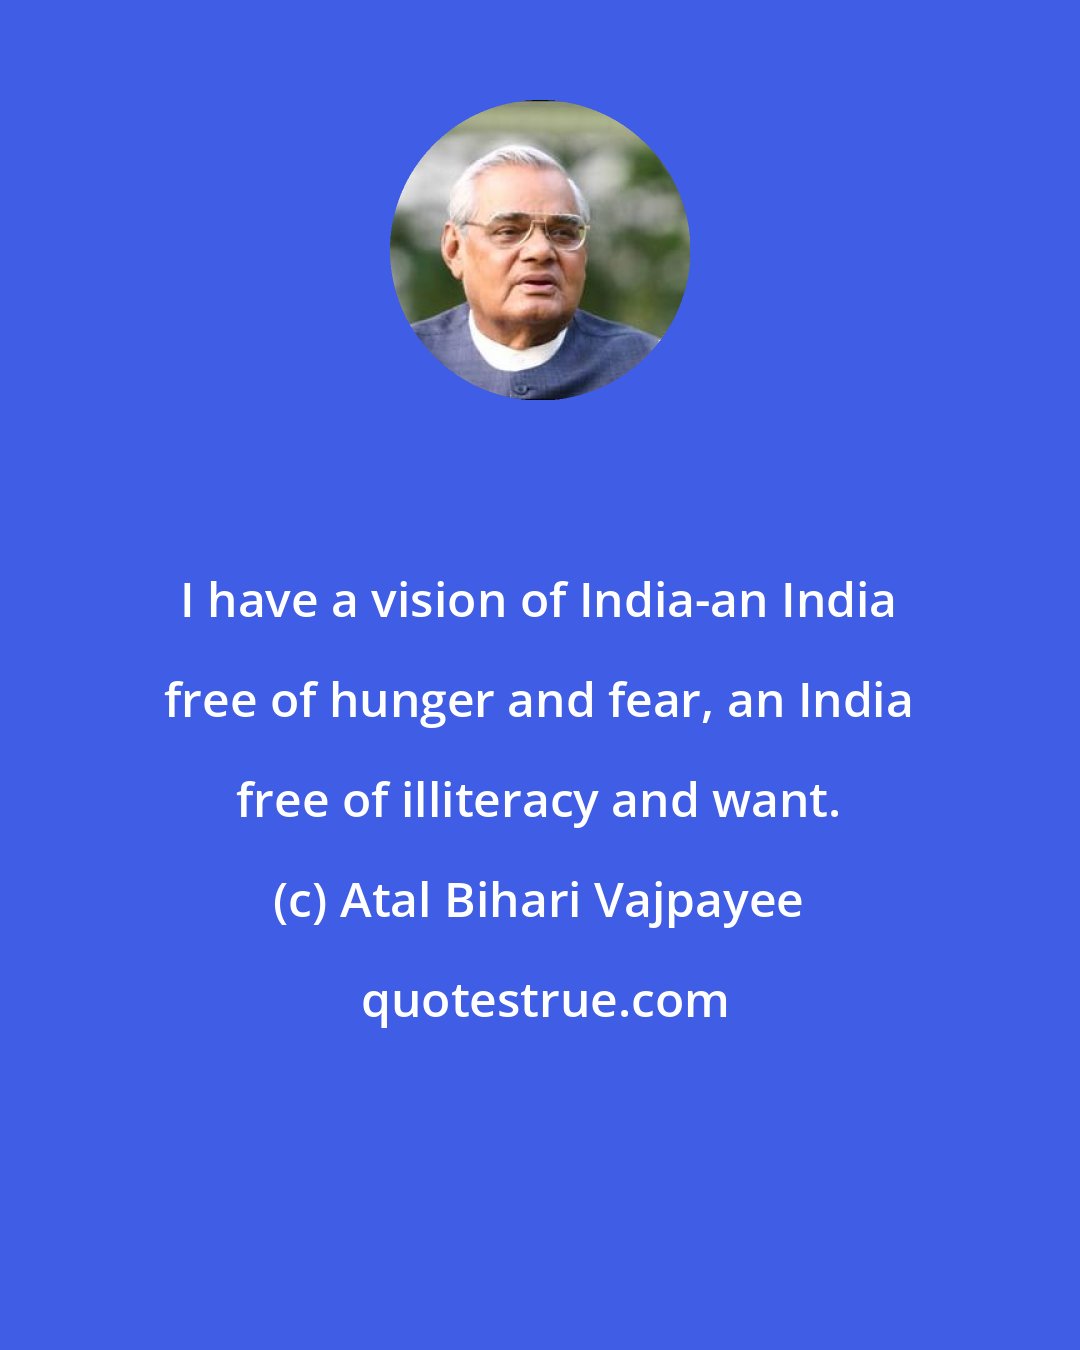 Atal Bihari Vajpayee: I have a vision of India-an India free of hunger and fear, an India free of illiteracy and want.